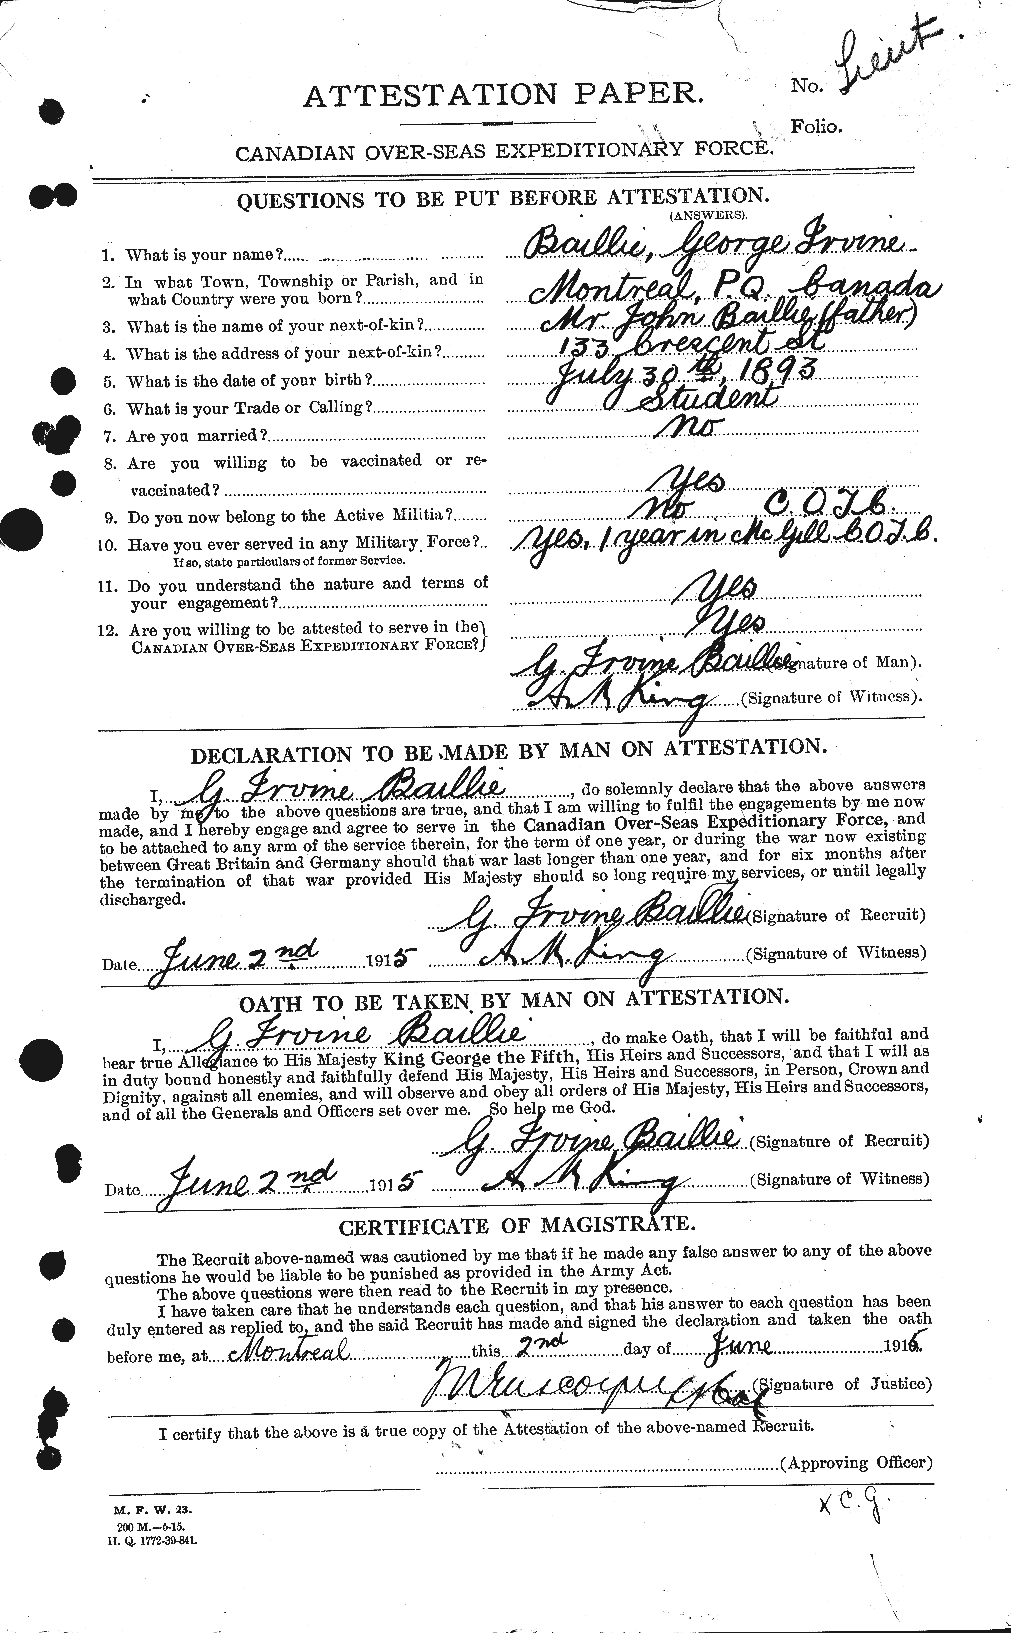 Dossiers du Personnel de la Première Guerre mondiale - CEC 226255a